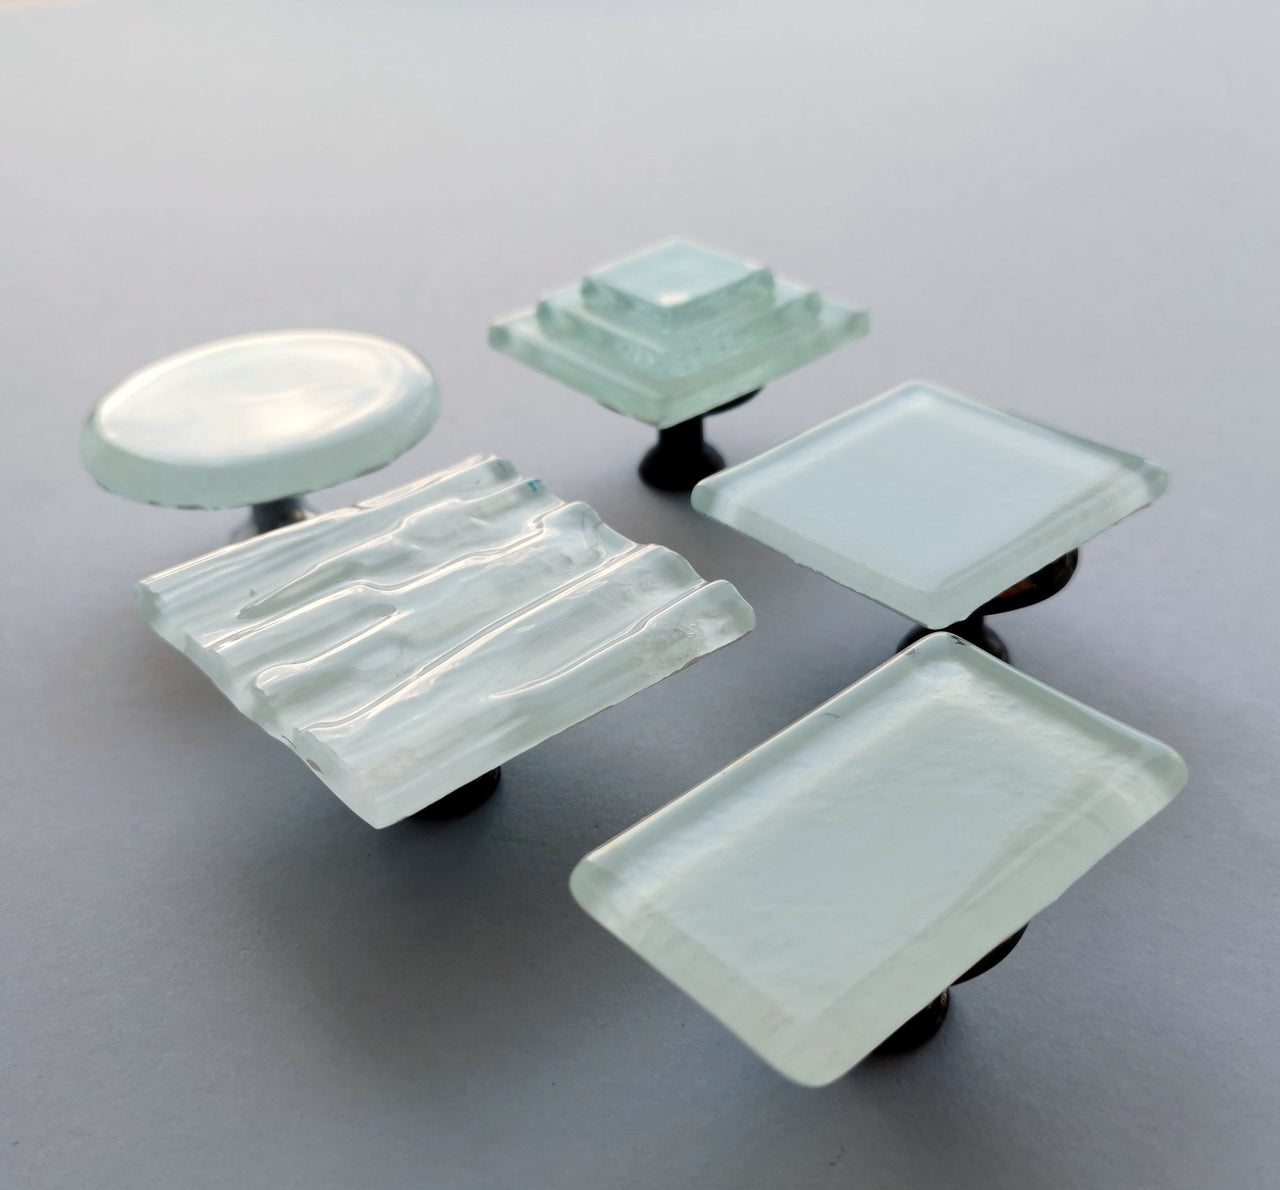 Matte White Fused Glass Knob. Artistic White Furniture Glass Knob - 0037